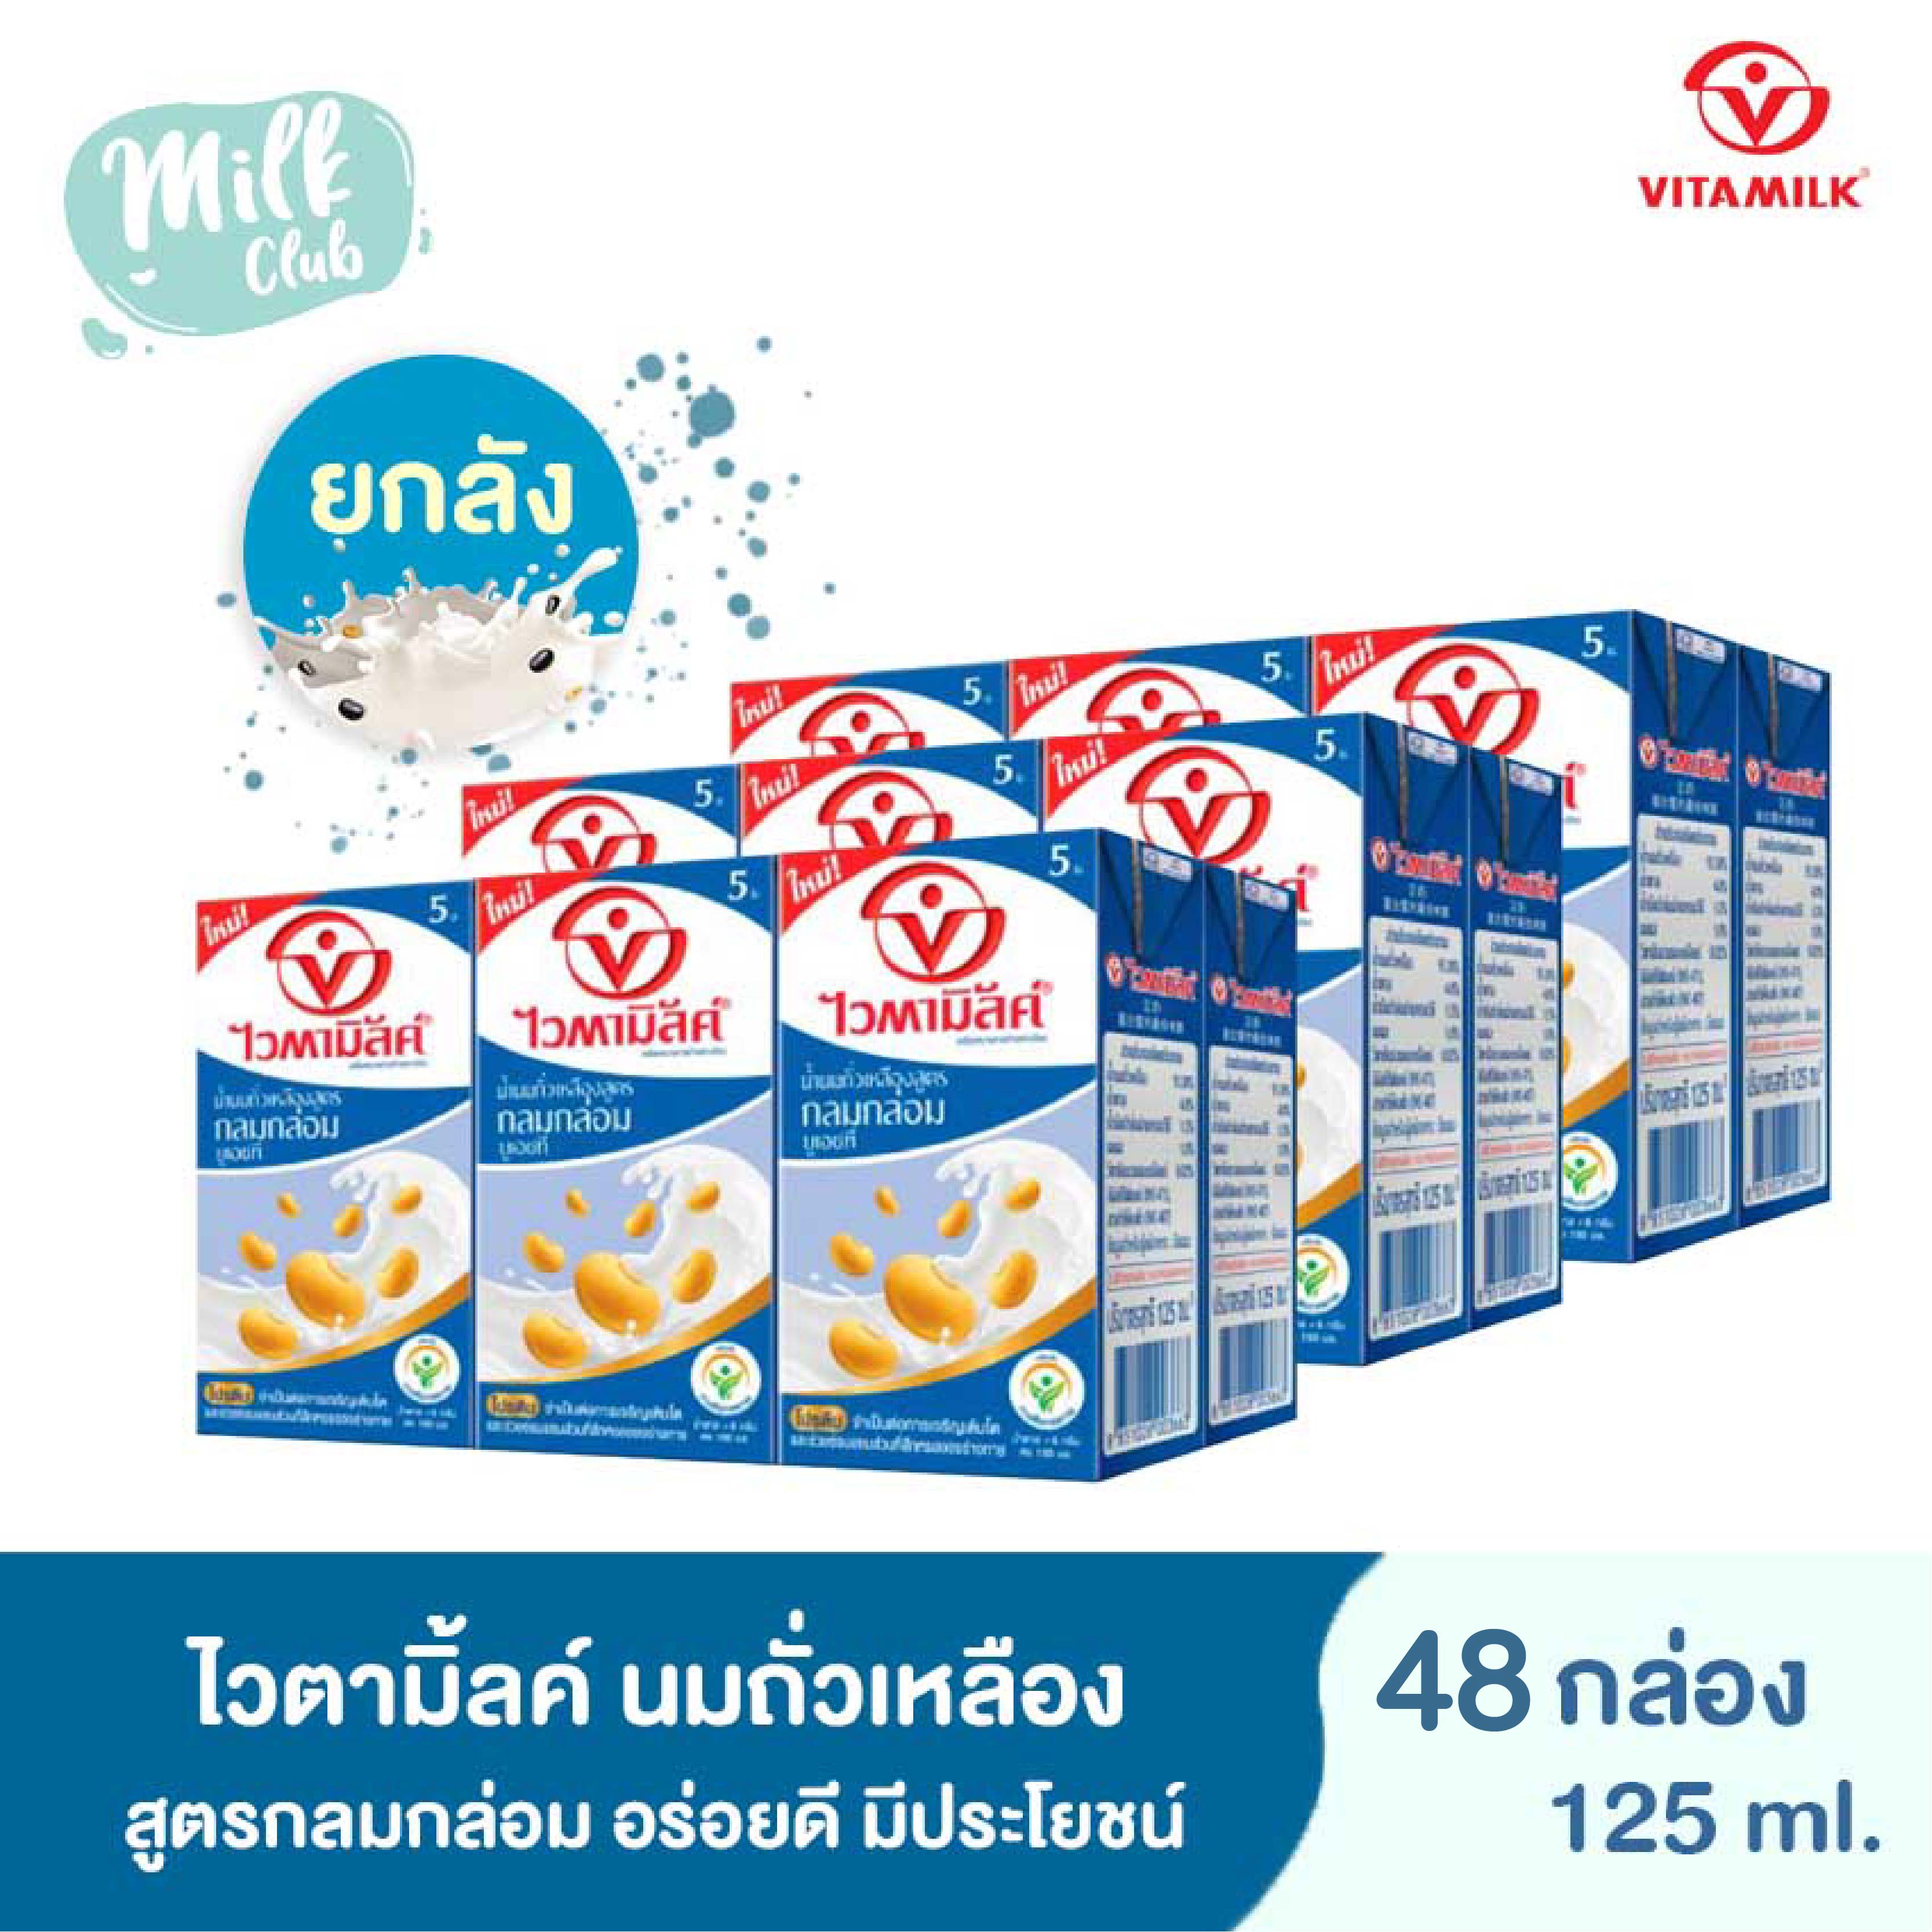 [ยกลัง] Vitamilk ไวตามิ้ลค์ นมถั่วเหลือง UHT สูตรกลมกล่อม (Smooth & Milky) มีประโยชน์ต่อร่างกาย น้ำตาลน้อยลง 45% ขนาด 125 มล. (48 กล่อง)